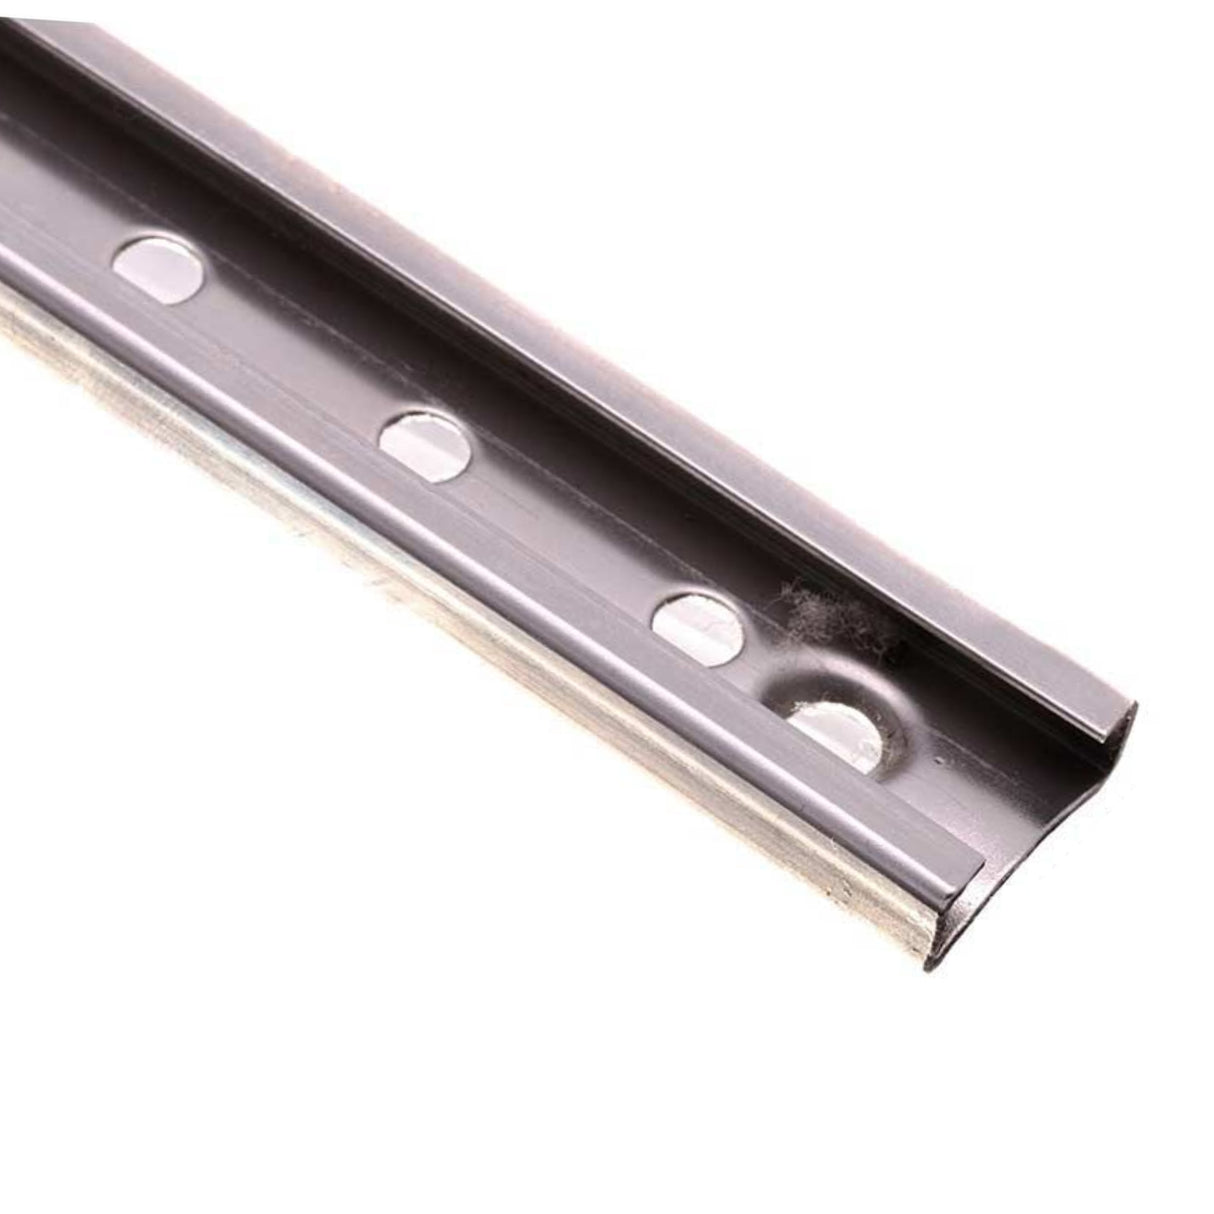 RWO Stainless Steel Track (16mm Internal Width, 330mm Long)